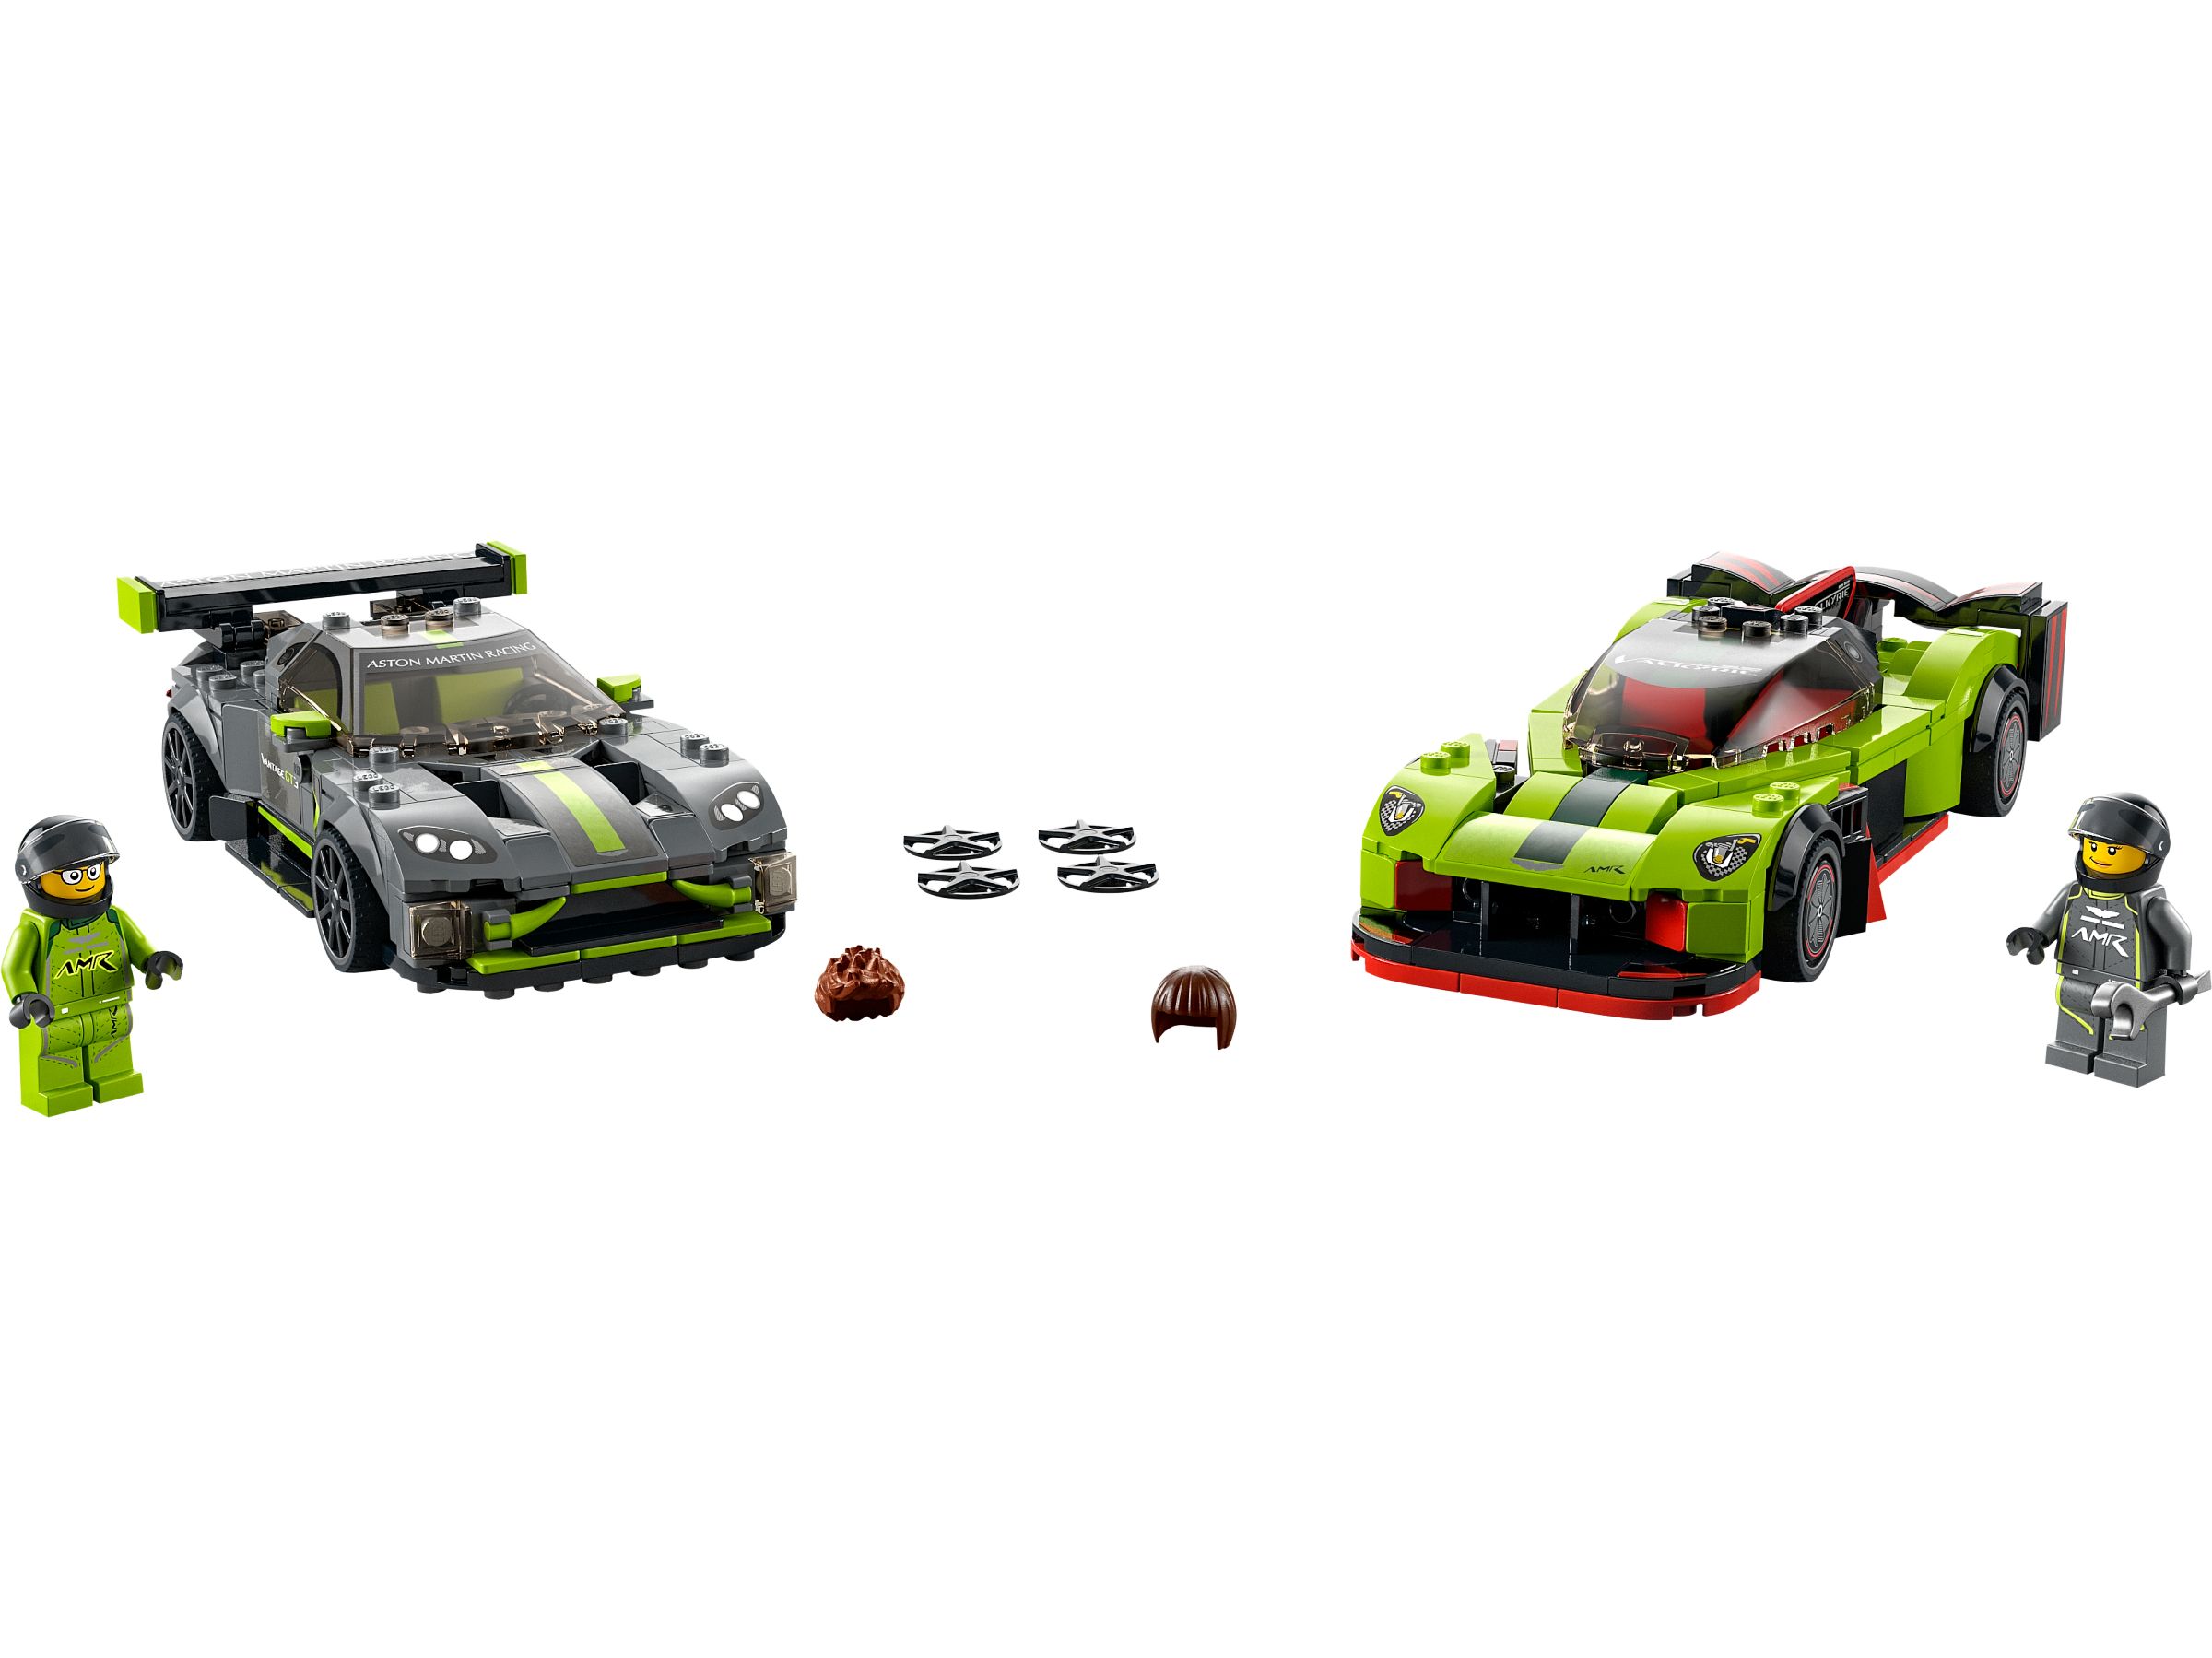 LEGO® Speed Champions 76910 - Aston Martin Valkyrie AMR Pro & Aston Martin Vantage GT3